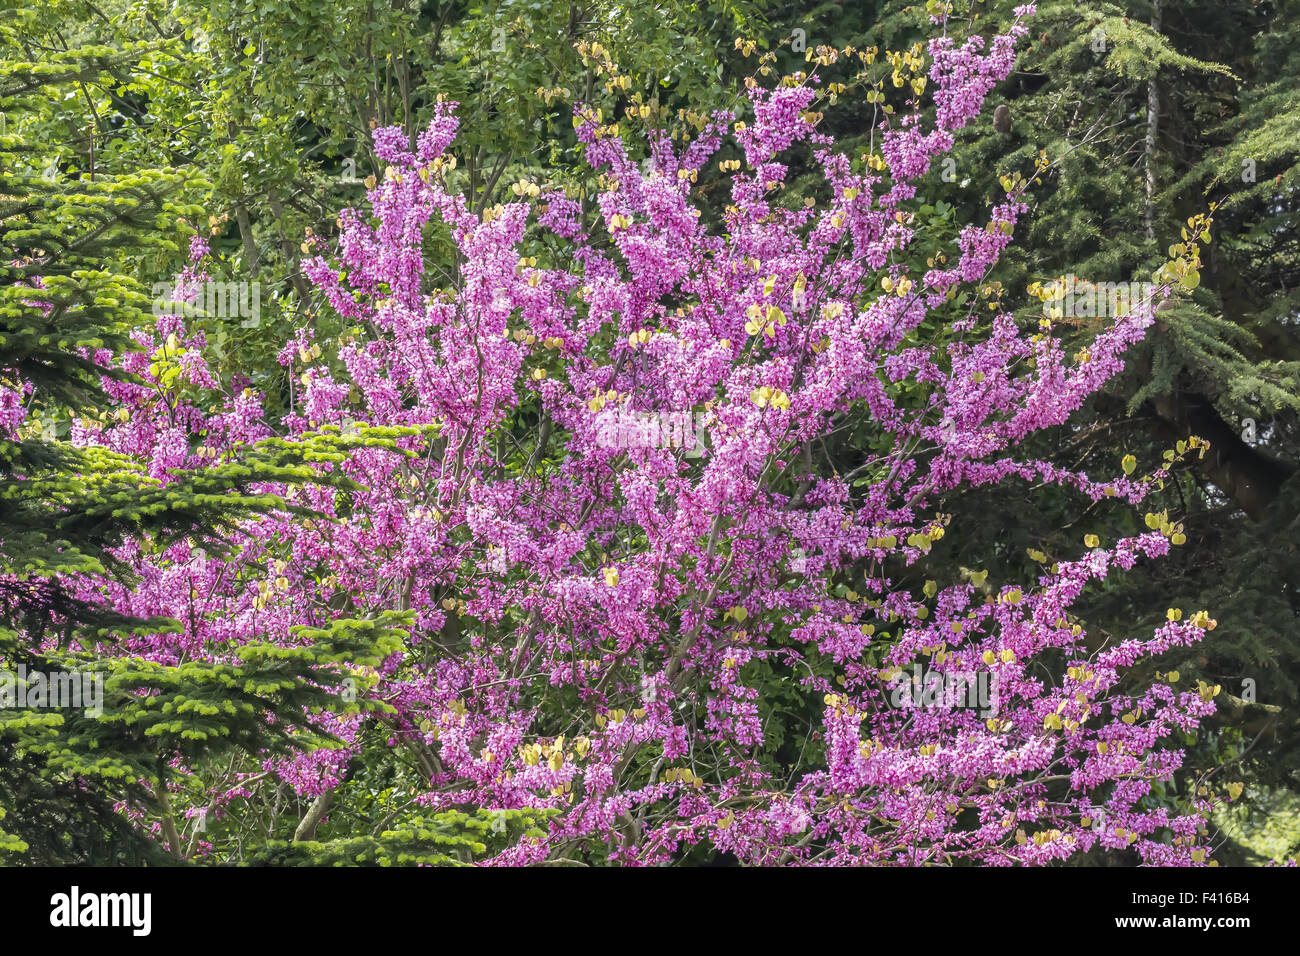 Cercis siliquastrum, Judas tree in spring Stock Photo